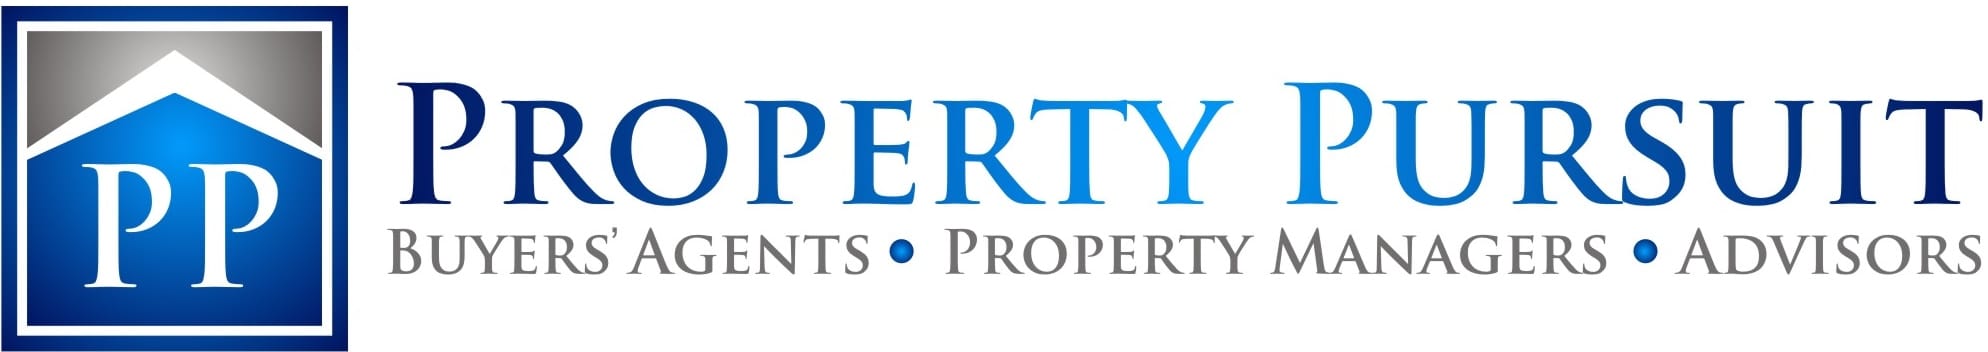 Property Pursuit